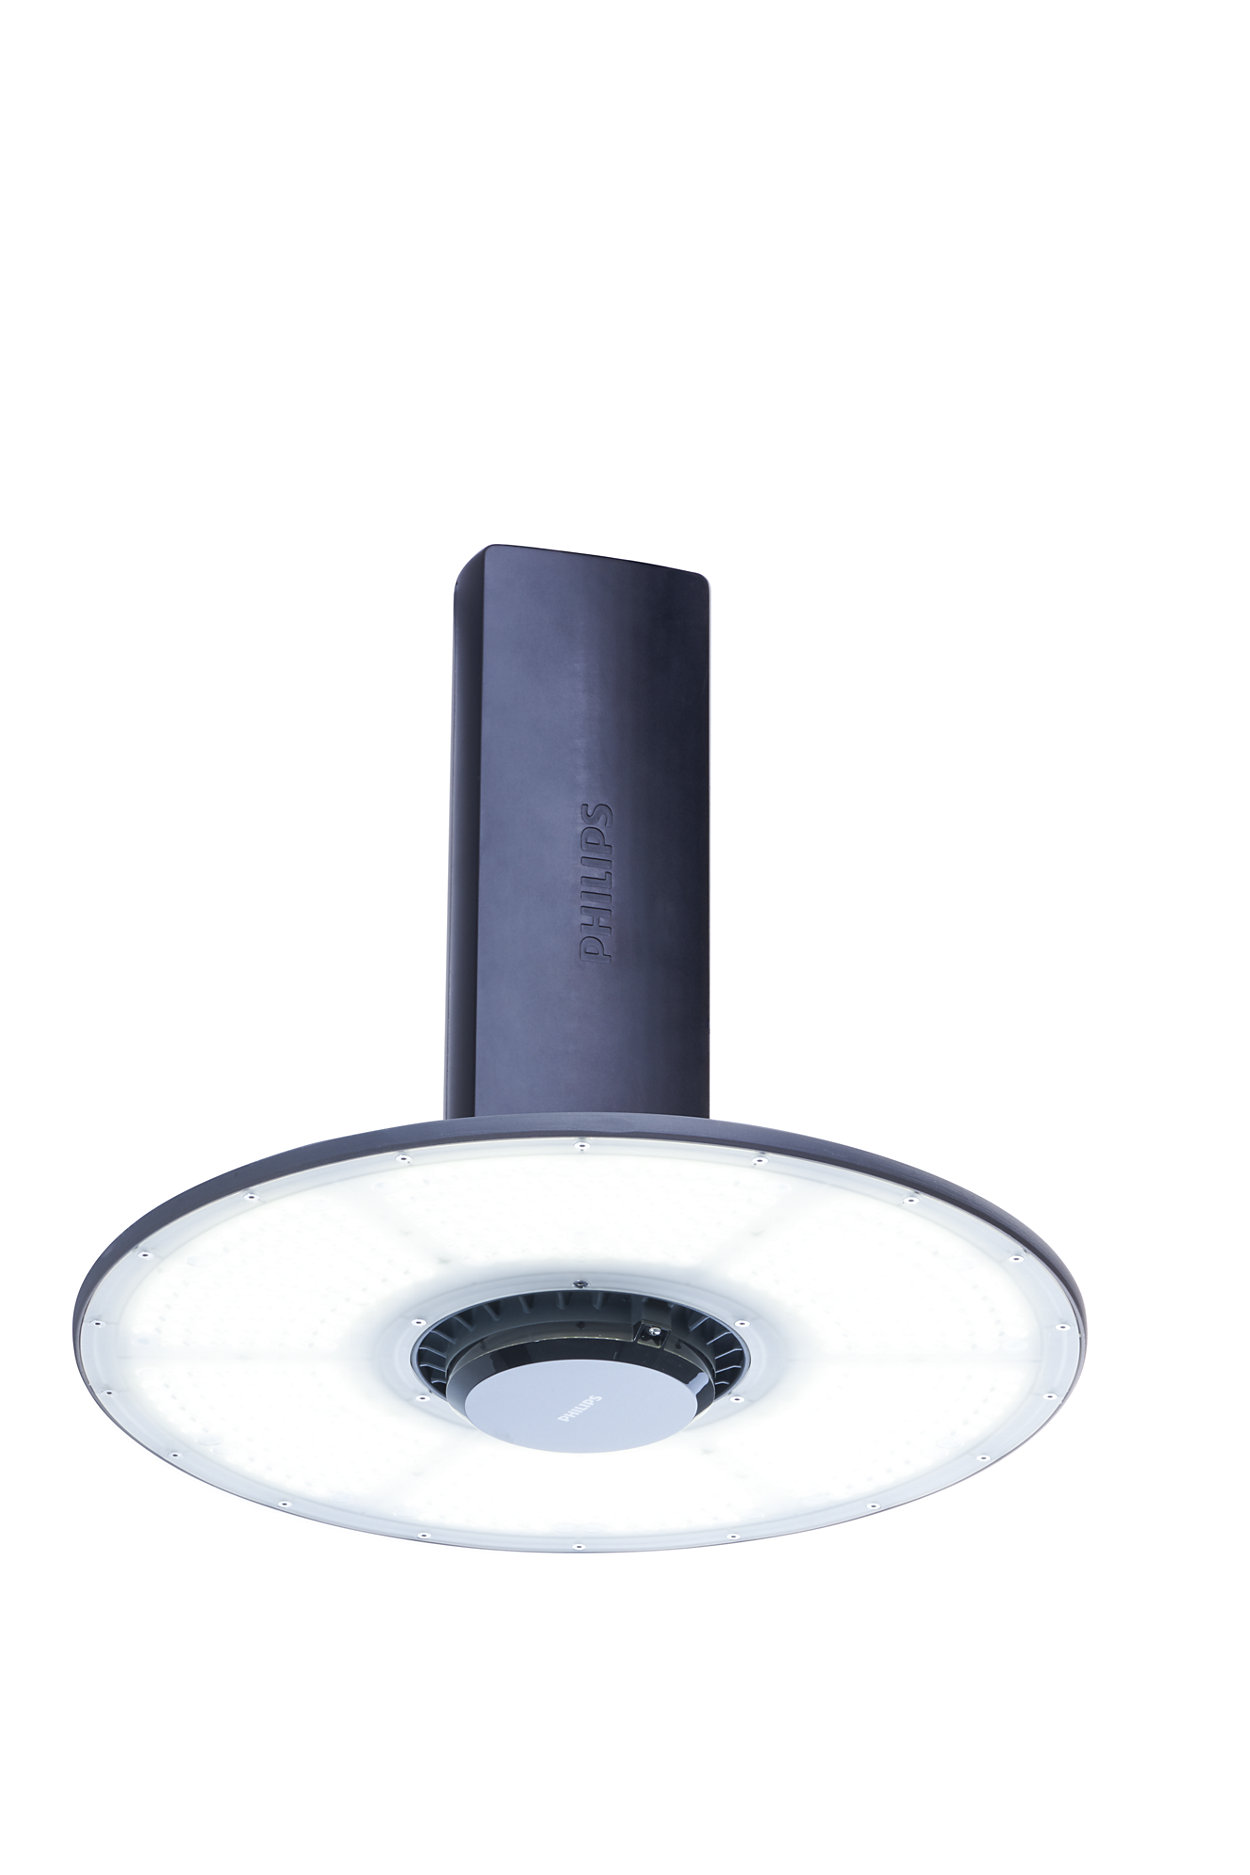 Lampu LED highbay serbaguna dengan efisiensi tinggi dan konektivitas anti-usang